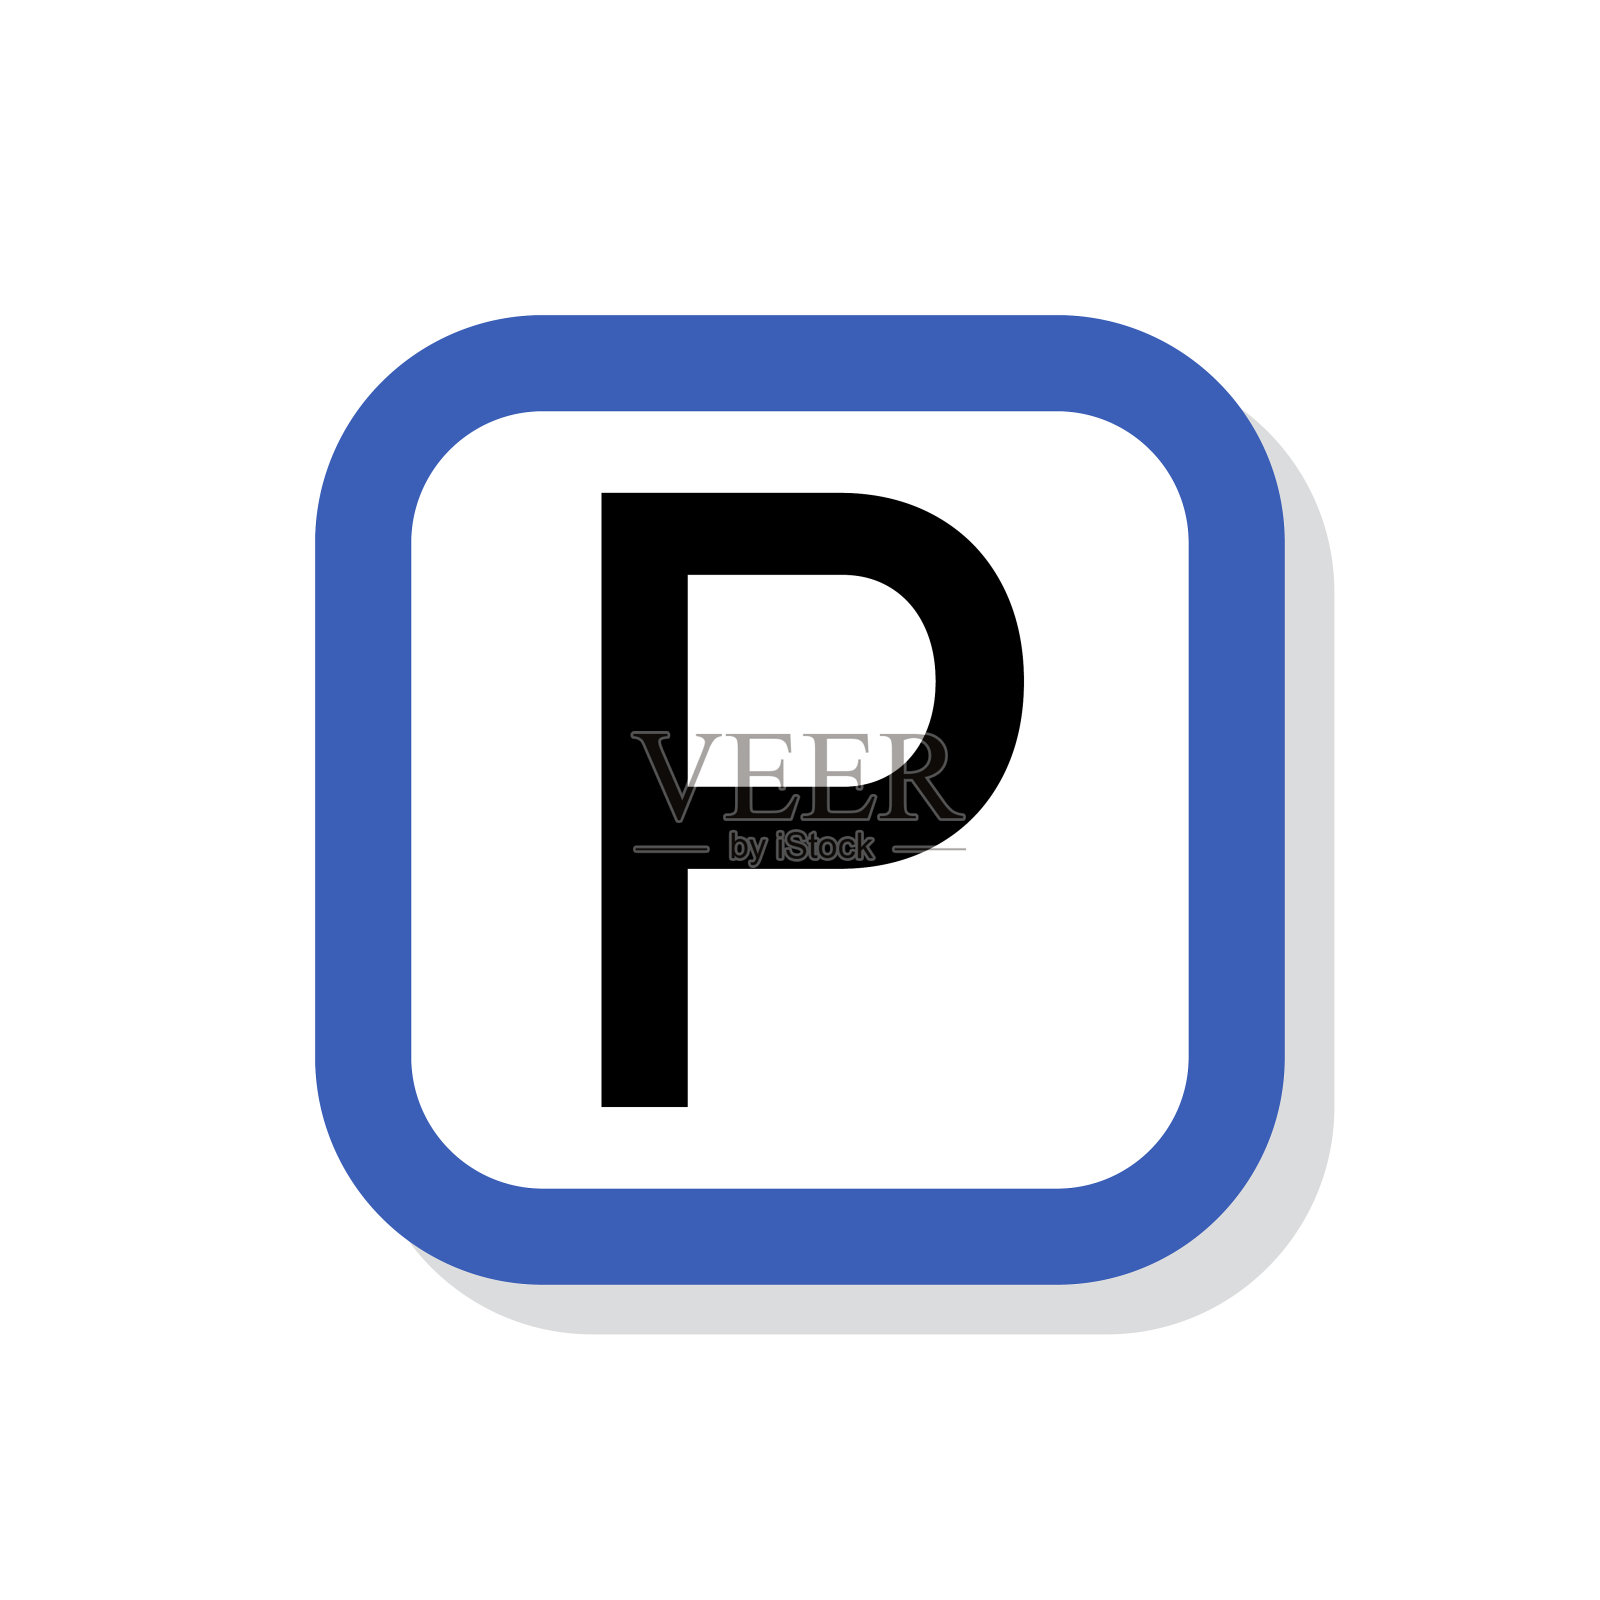 停车标志矢量图标。道路标志、停车标志、孤立交通例证。图标素材